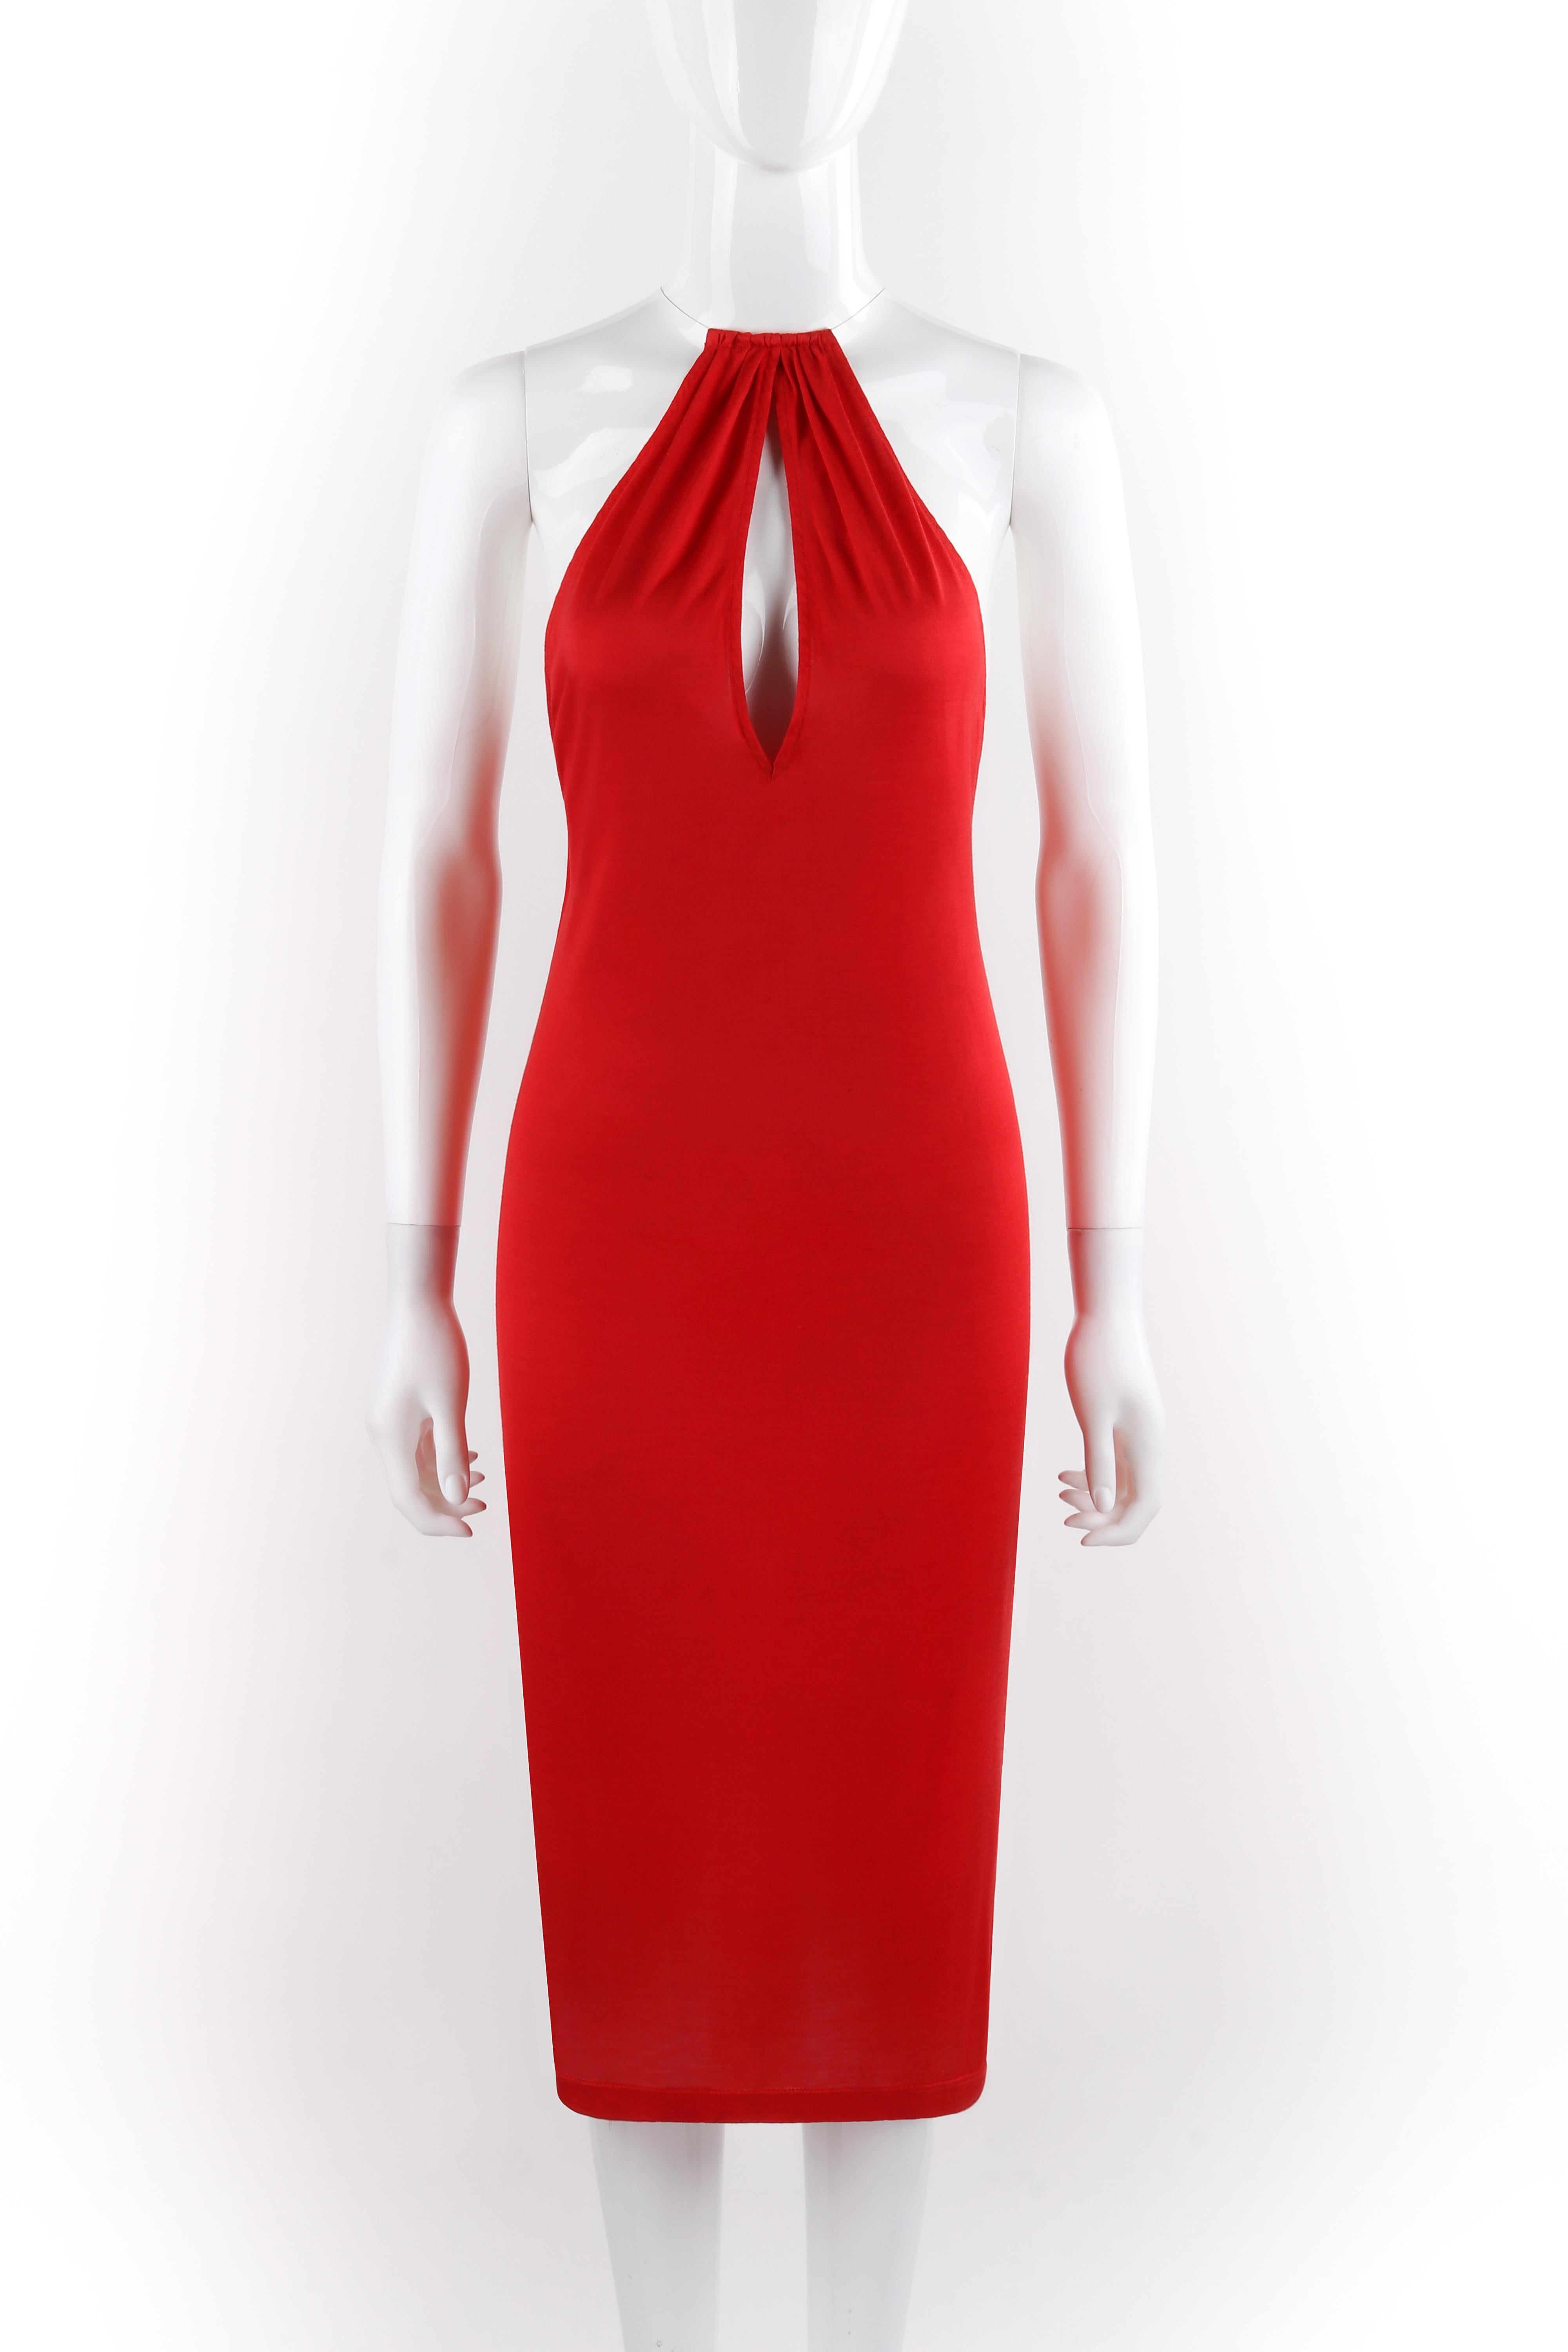 ALEXANDER McQUEEN S/S 2001 “Eye” Red Keyhole Cutout Wire Choker Halter Top Dress
 
Brand / Manufacturer: Alexander McQueen
Collection: S/S 2000 “Eye”- Runway look #42
Designer: Alexander McQueen
Style: Halter dress
Color(s): Red; choker: